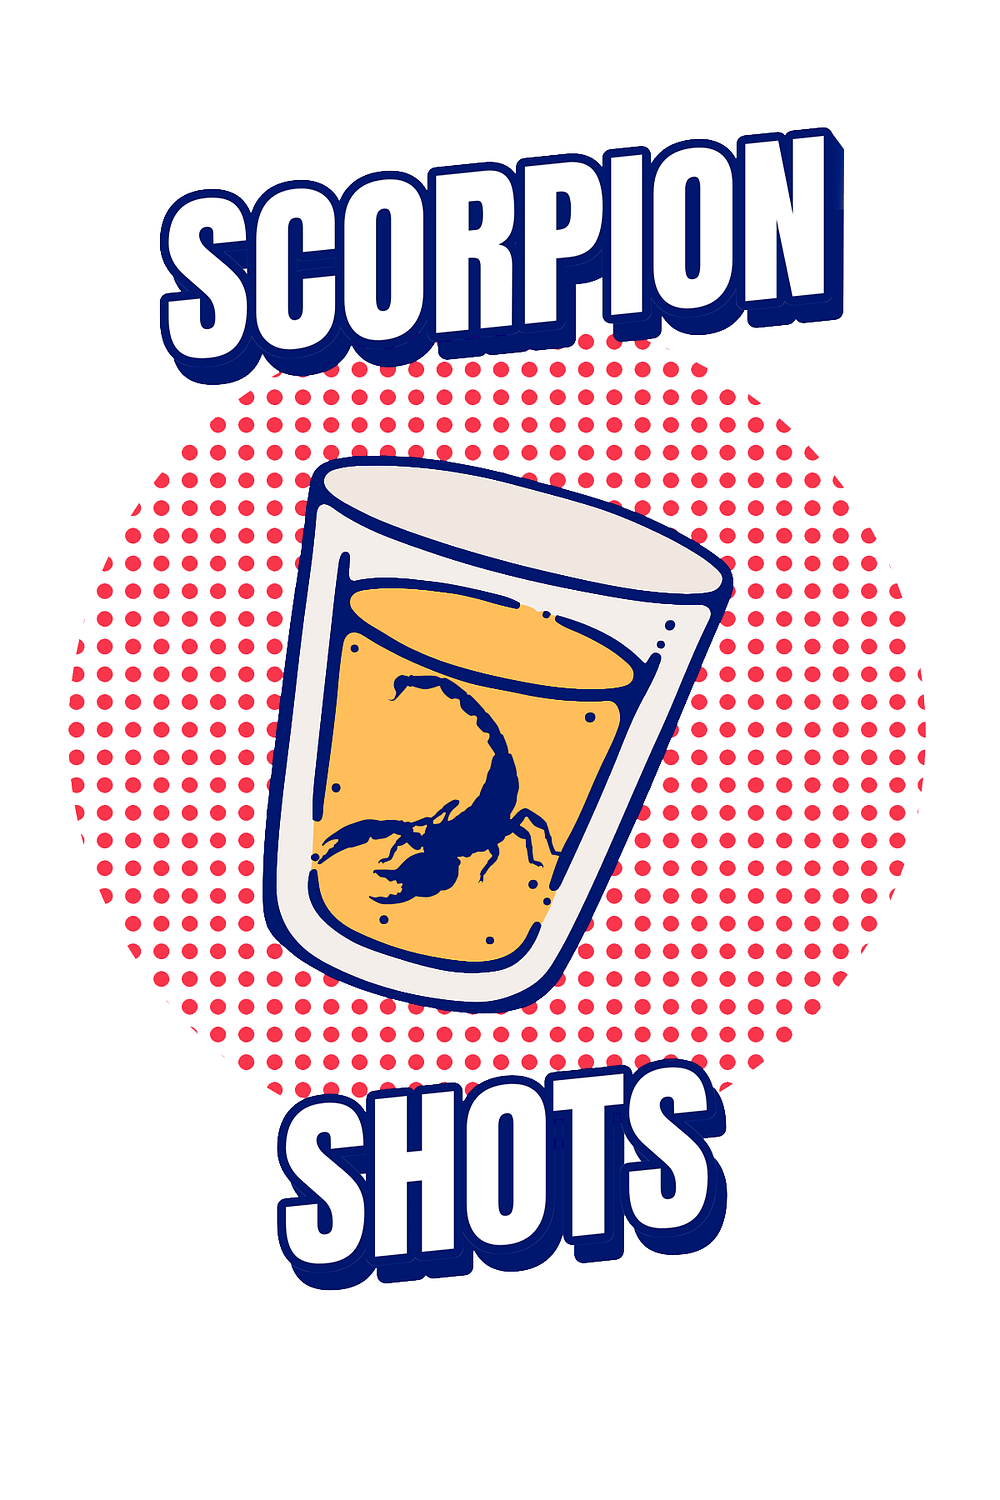 Scorpion Shots